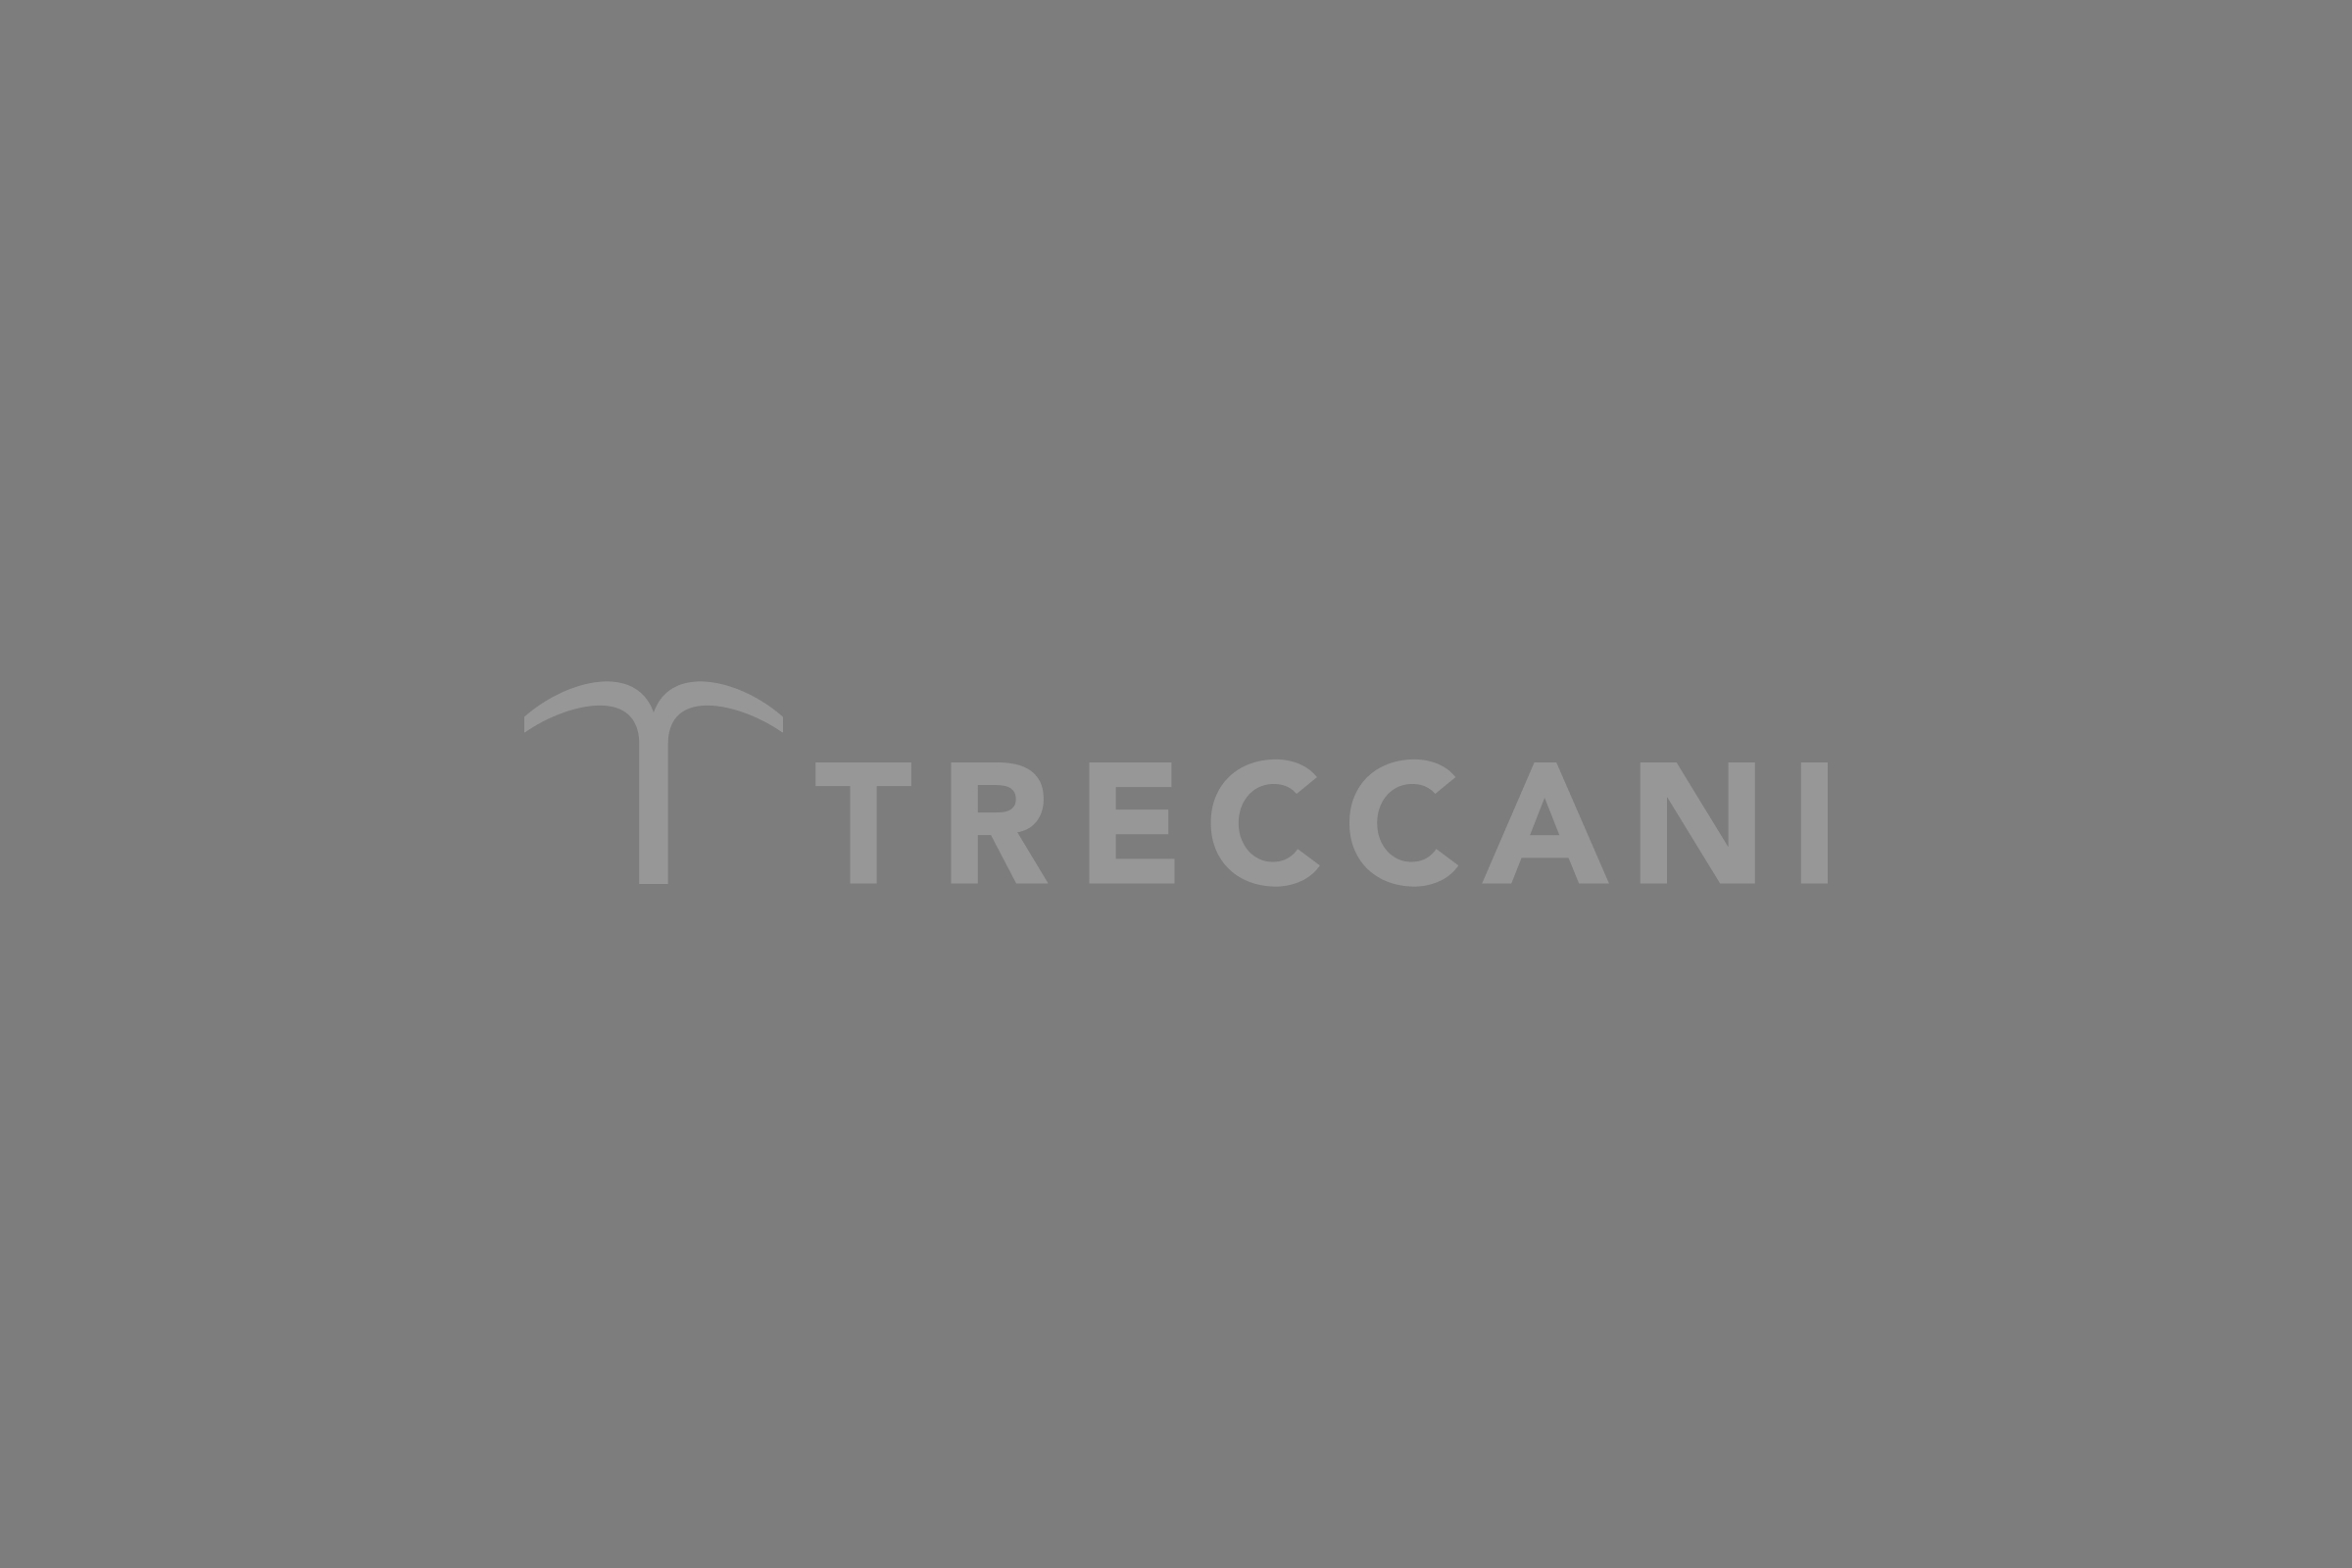 www.treccani.it